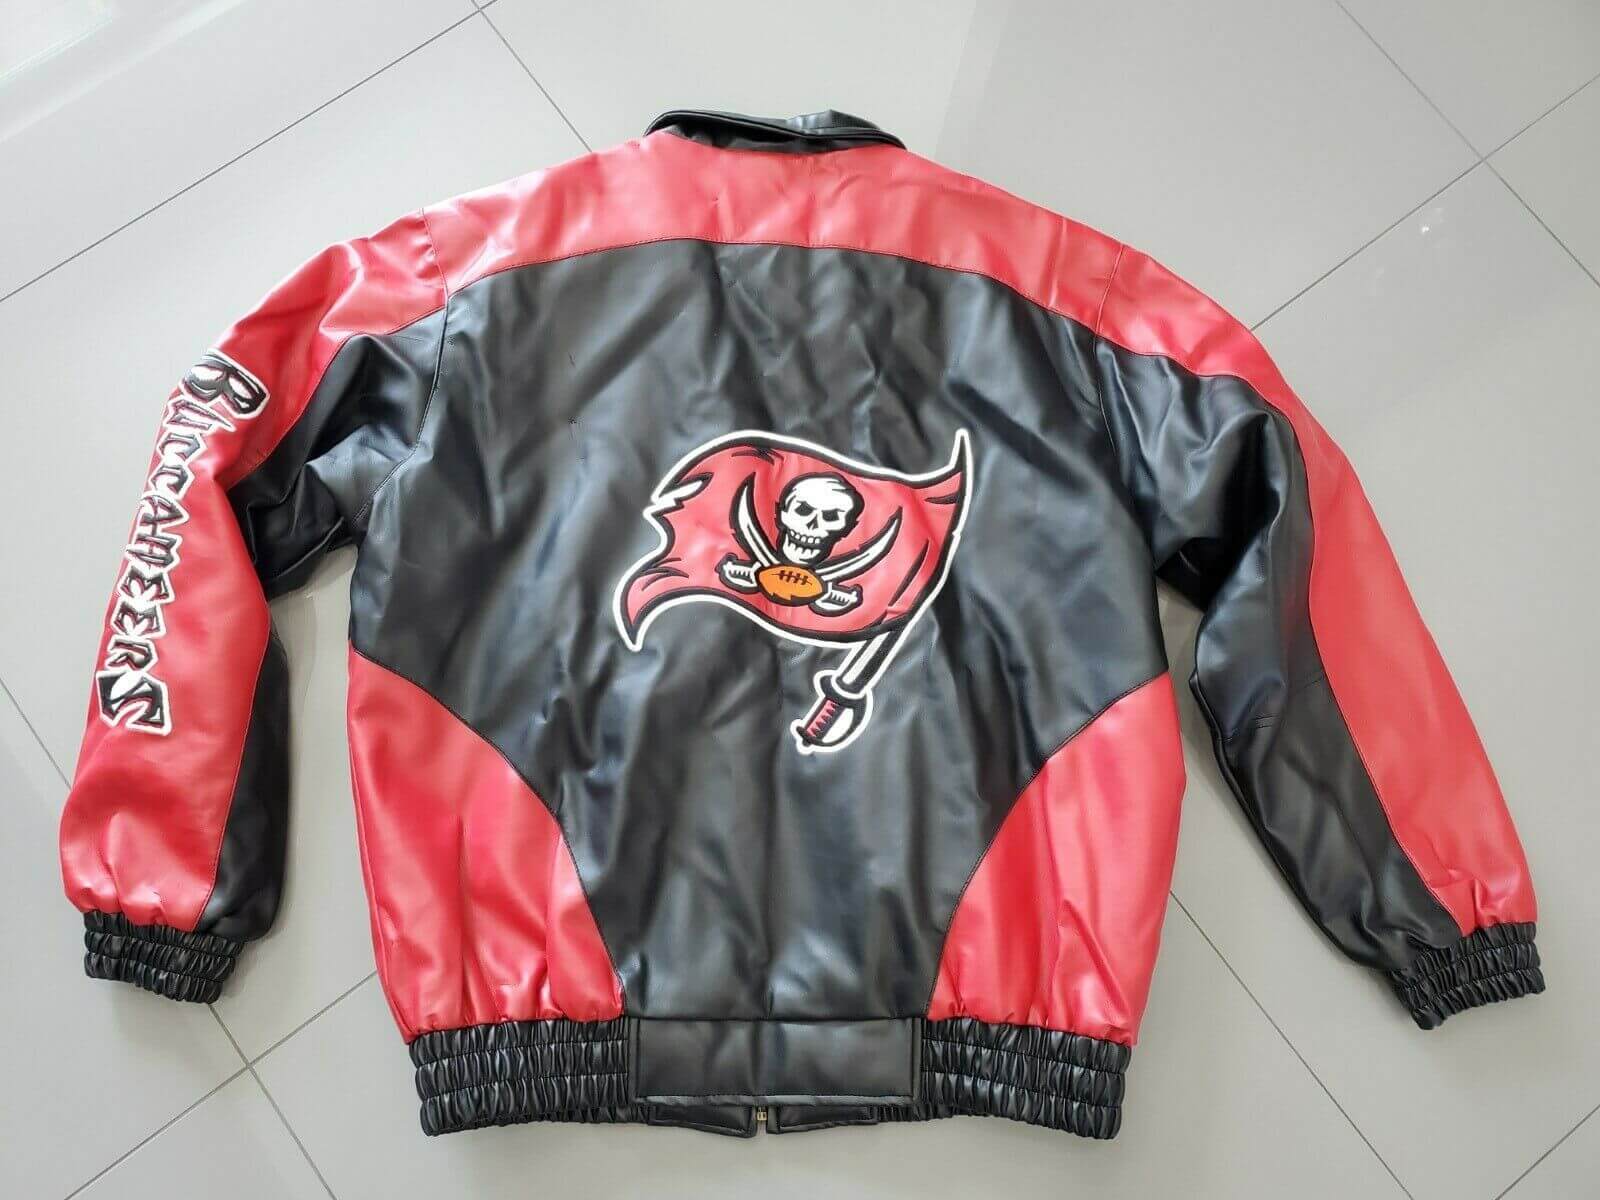 Maker of Jacket Fashion Jackets Vintage Tampa Bay NFL Buccaneers Leather